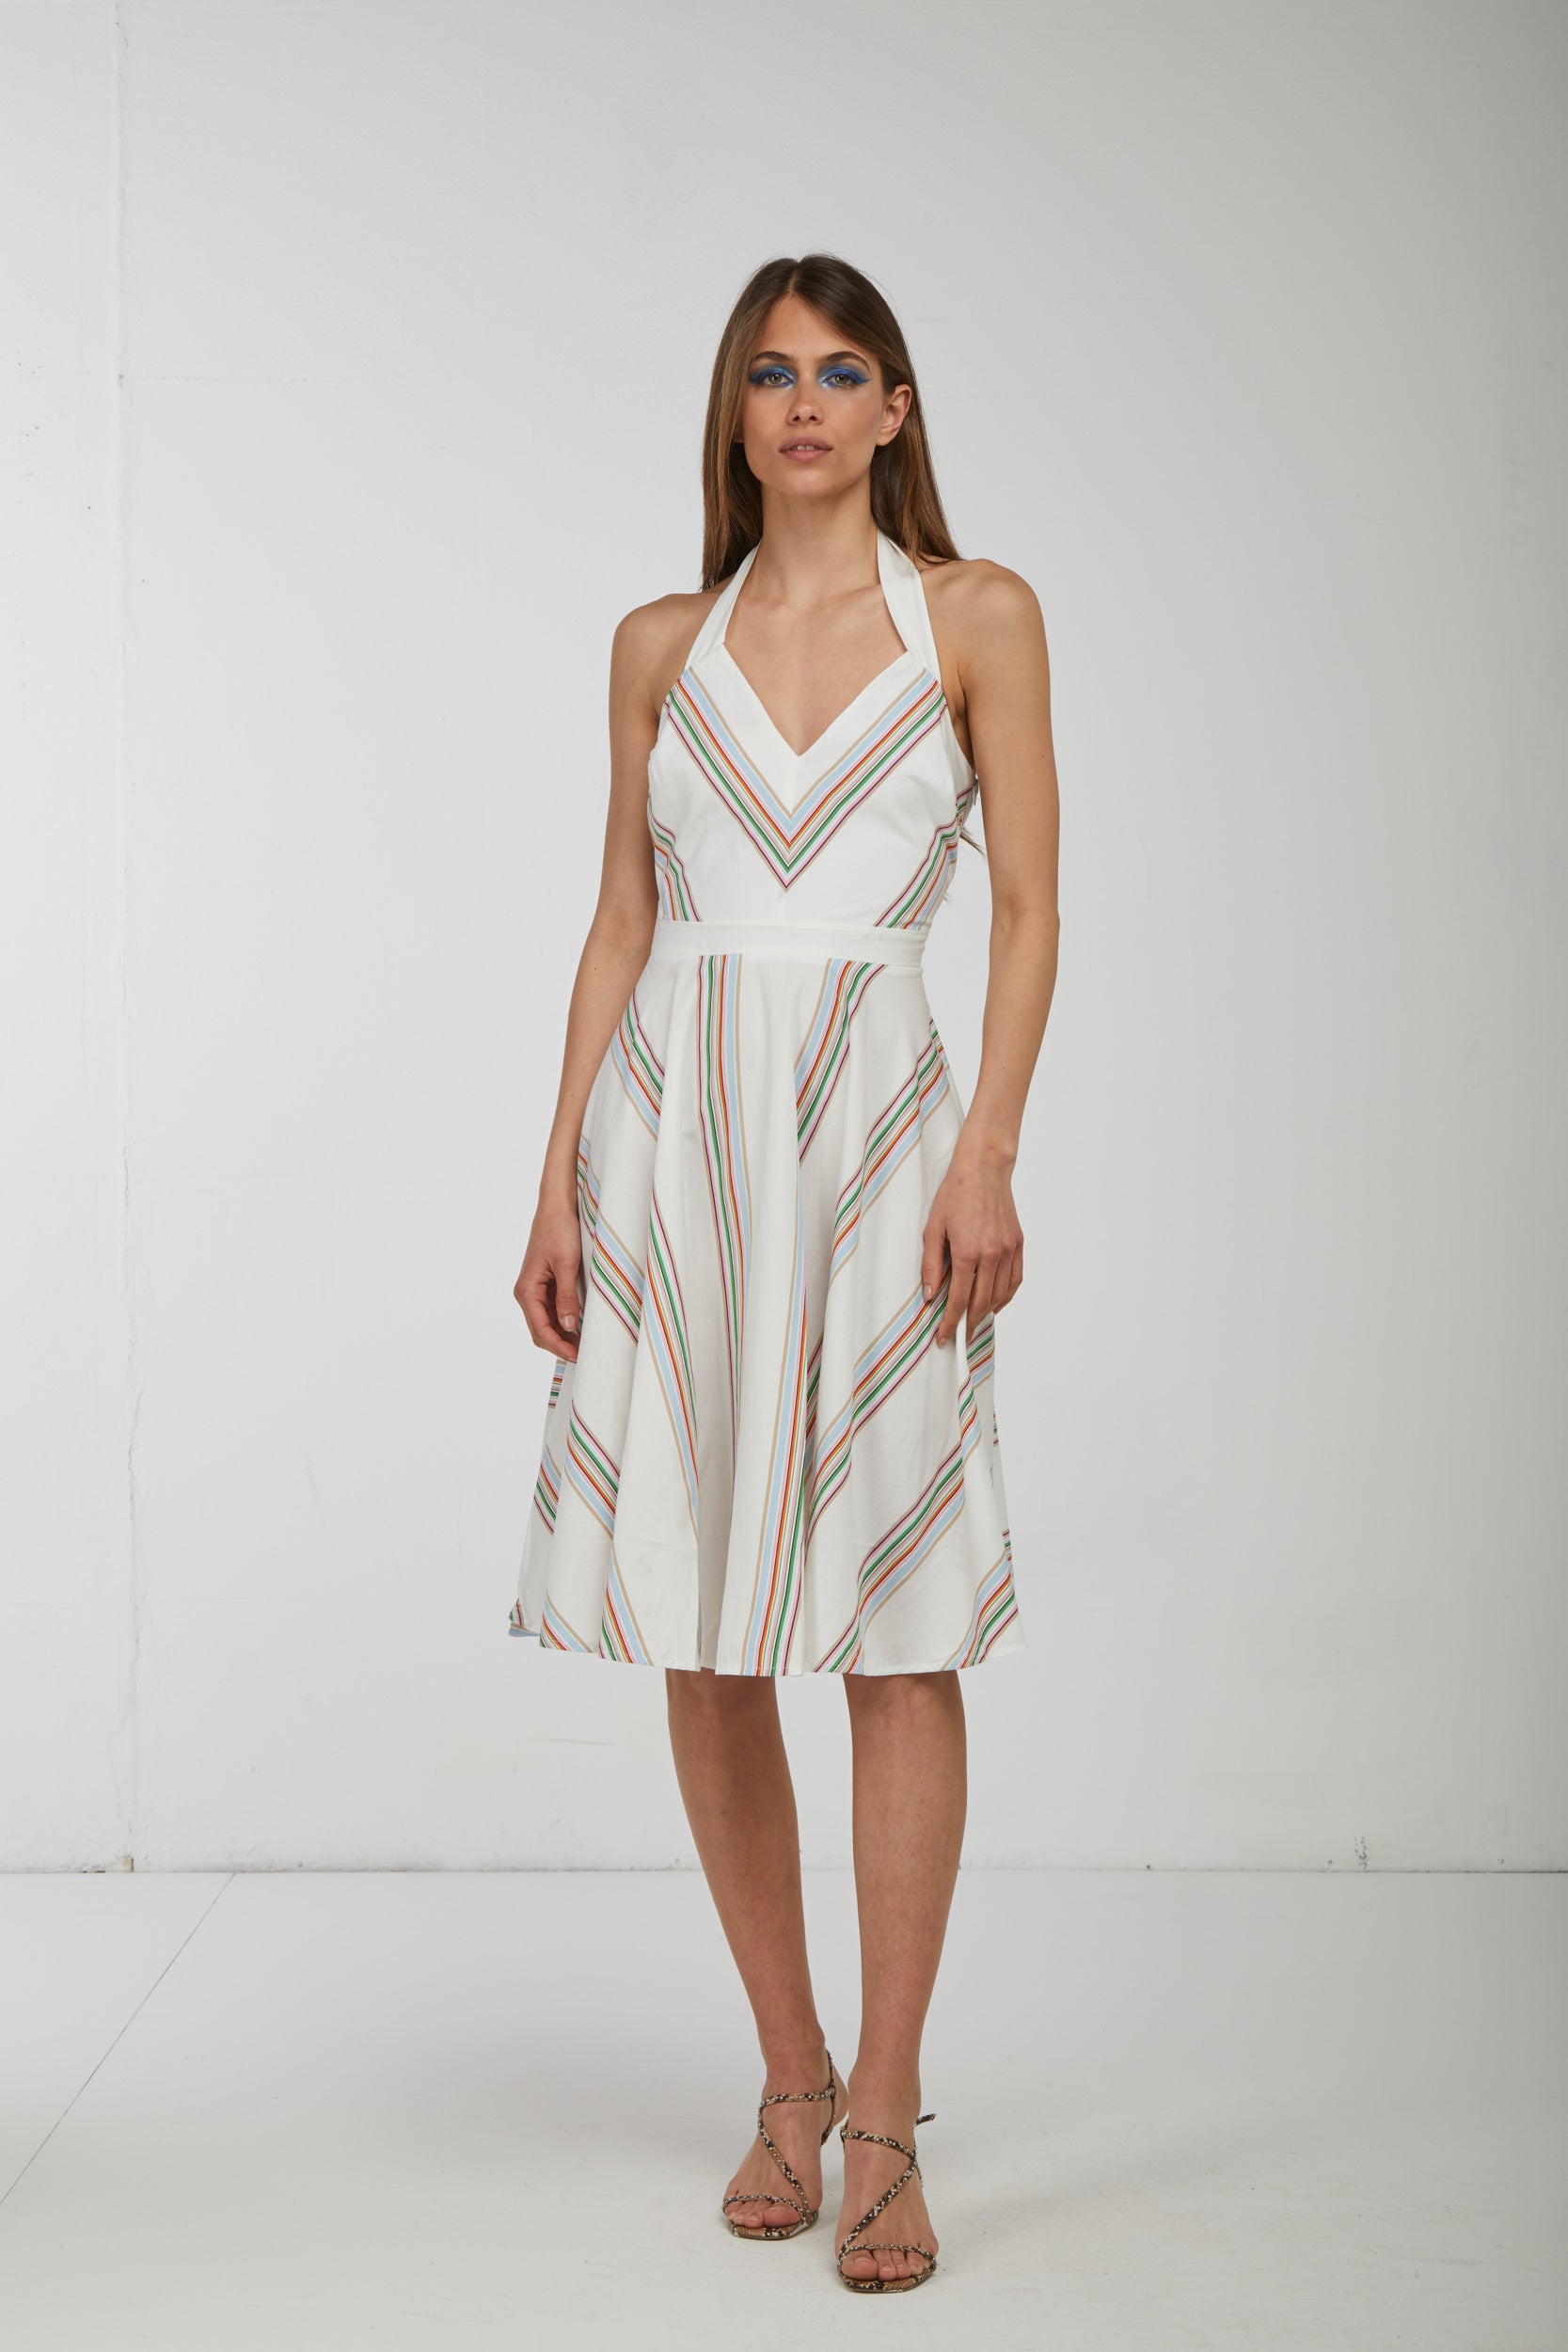 OTTOD'AME White Retro Dress and Stripes